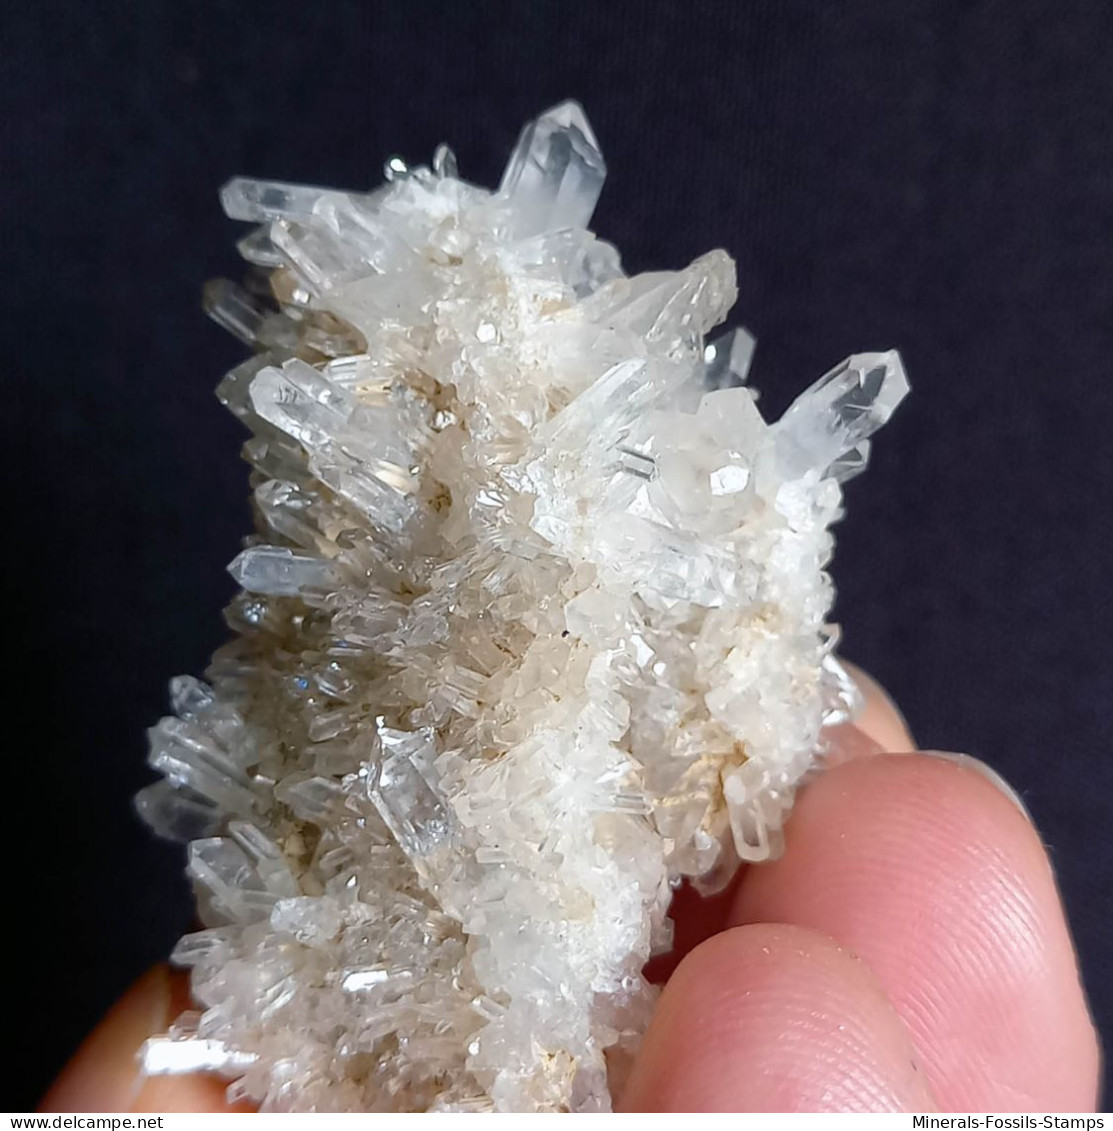 #G75 Splendide cristaux de QUARTZ (Castagnola, Val D'Aveto, Piacenza, Emilia Romagna, Italie)